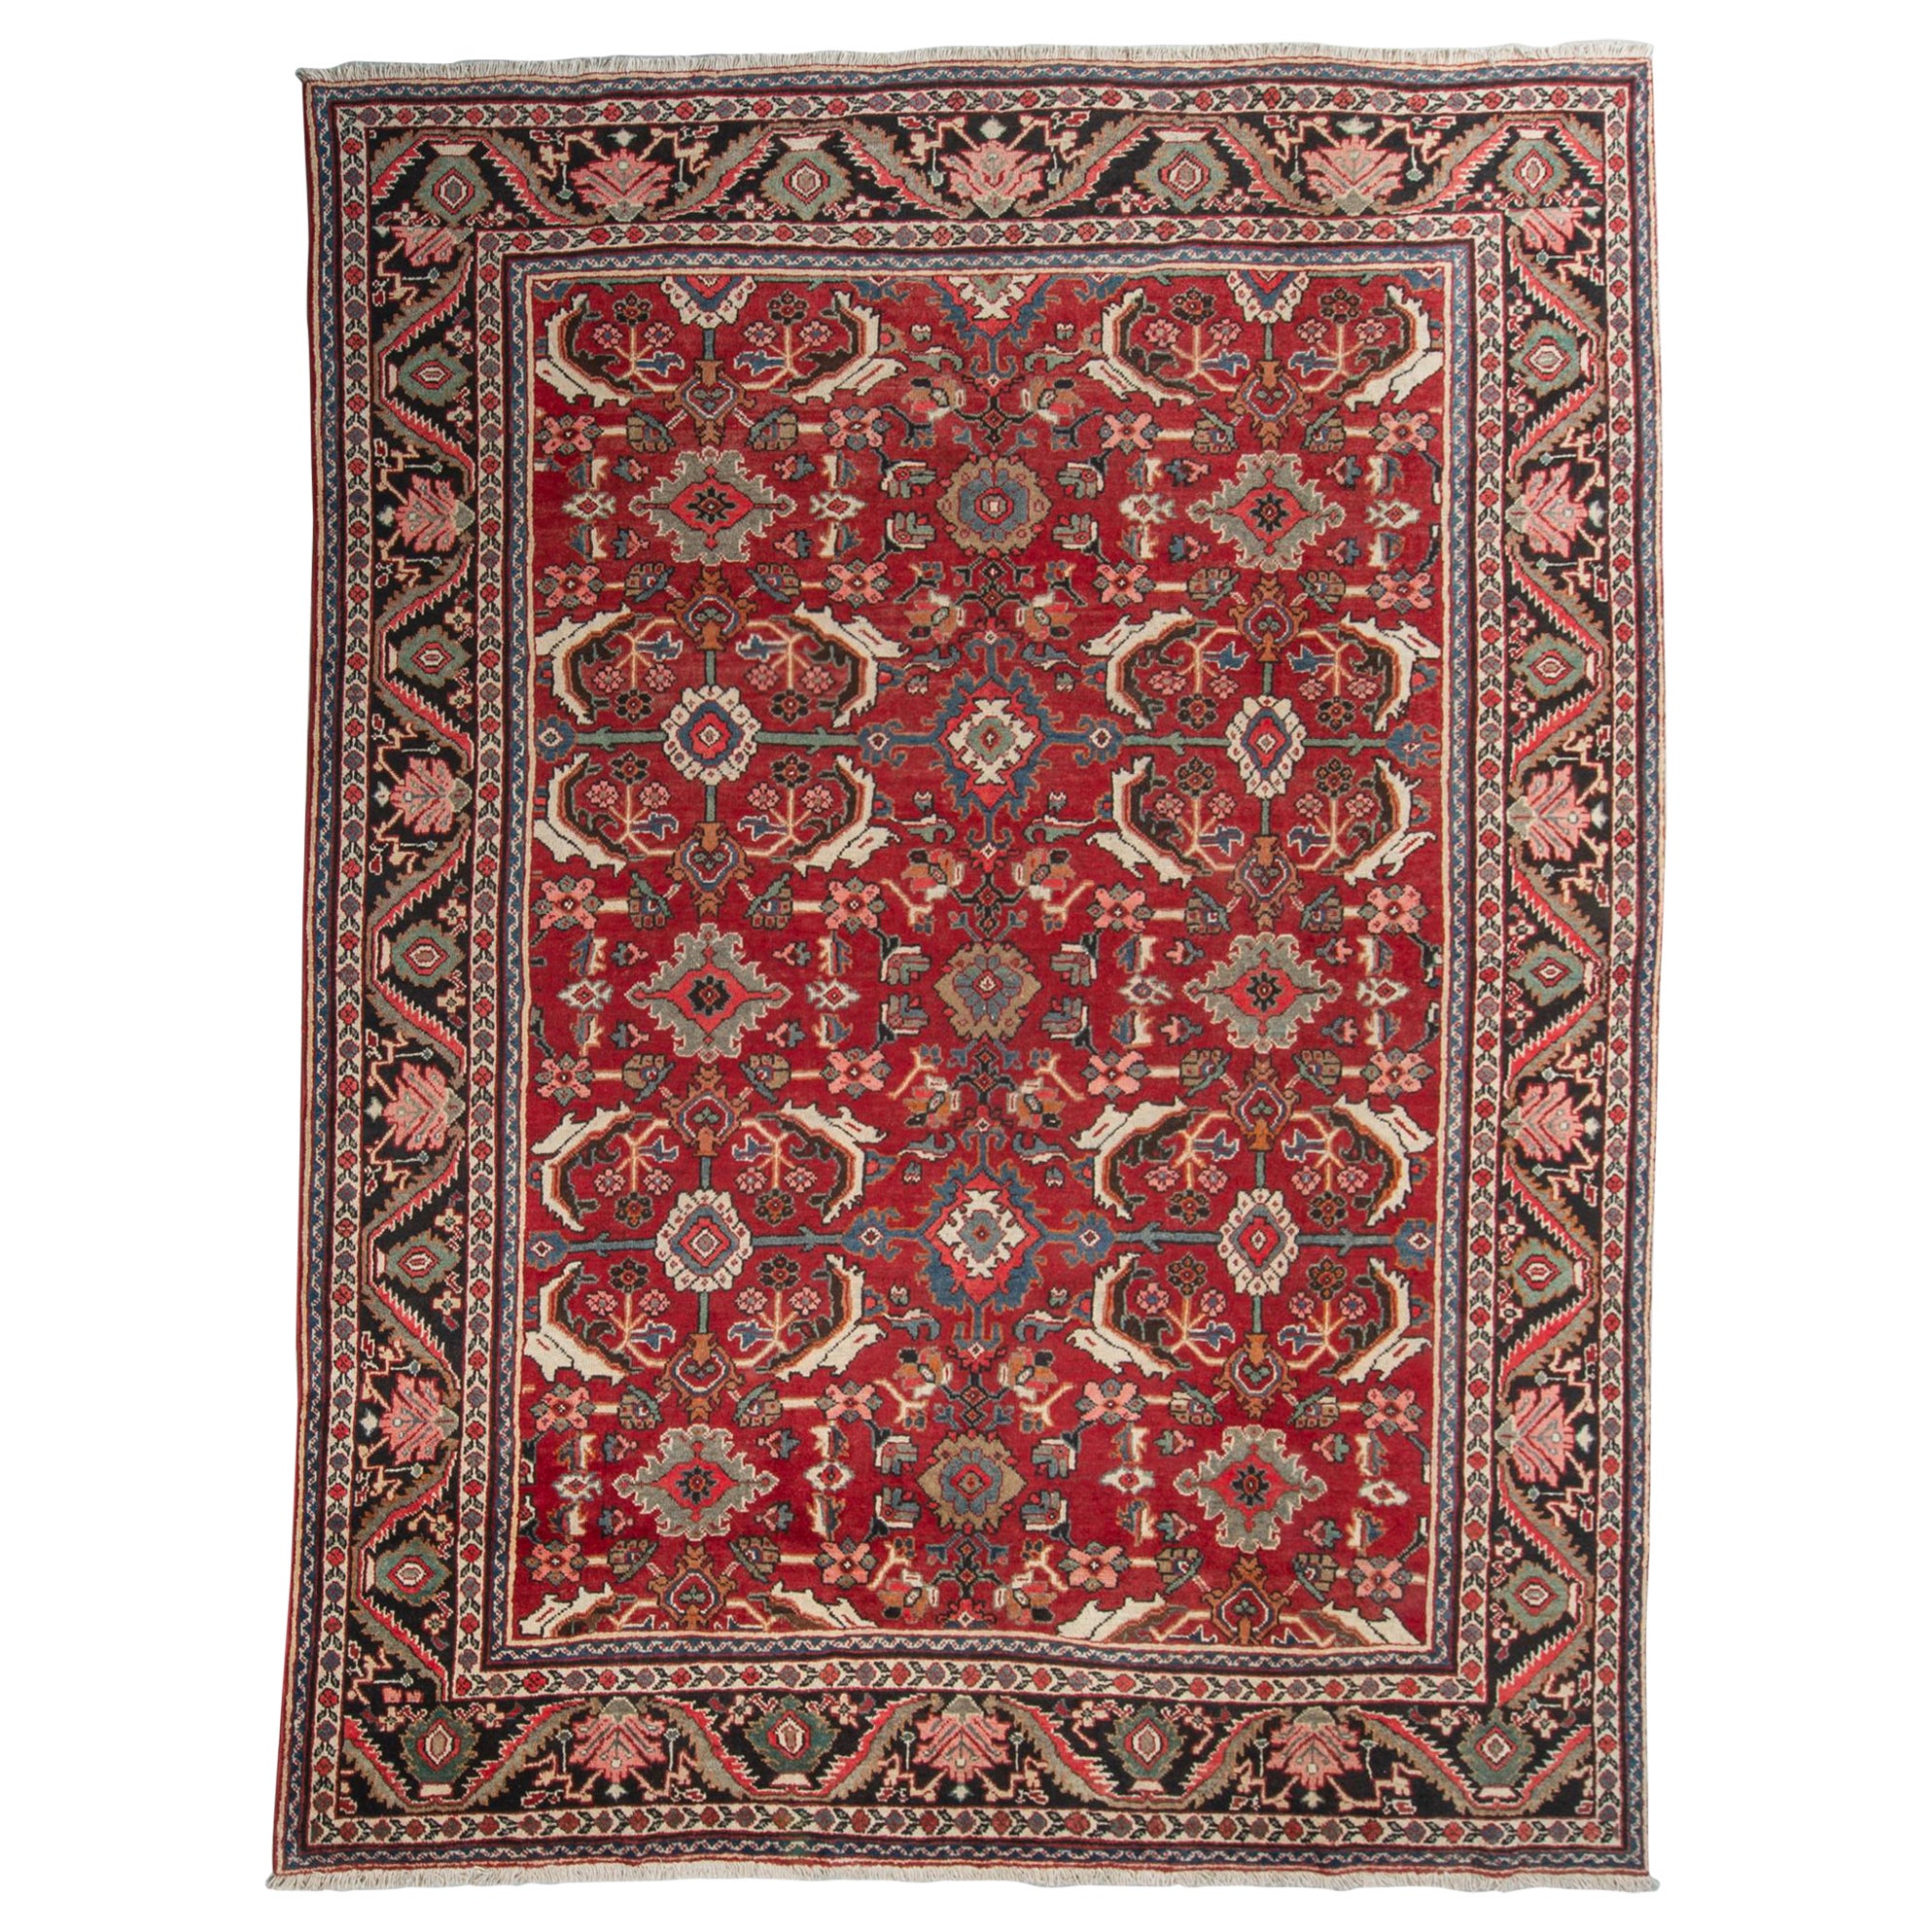 Old Large Elegant Garebagh Rug or Carpet